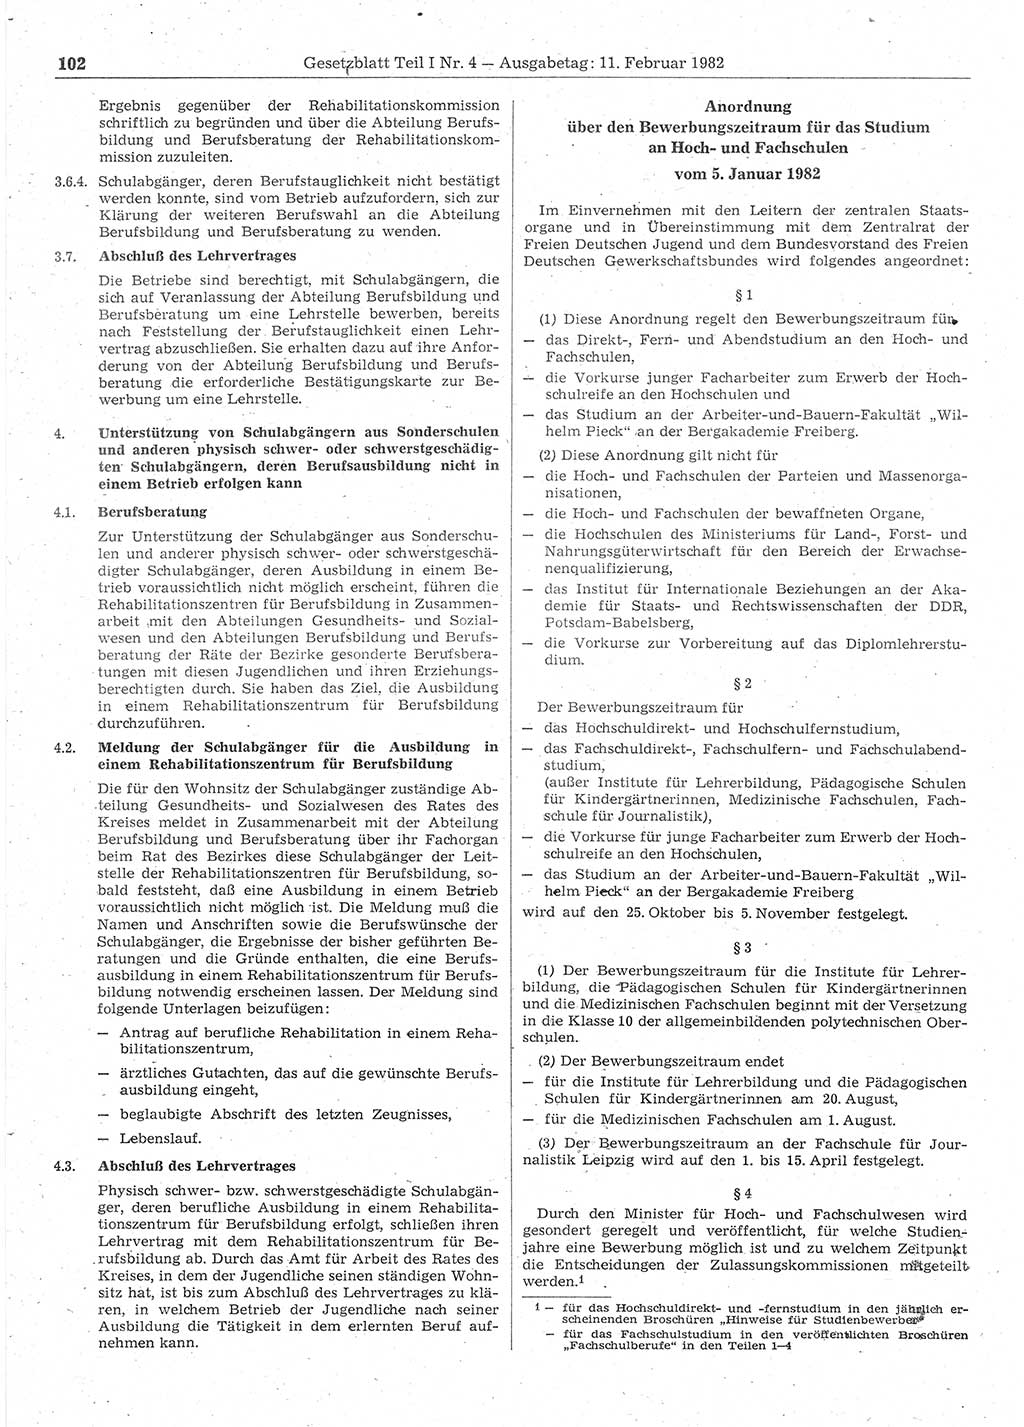 Gesetzblatt (GBl.) der Deutschen Demokratischen Republik (DDR) Teil Ⅰ 1982, Seite 102 (GBl. DDR Ⅰ 1982, S. 102)